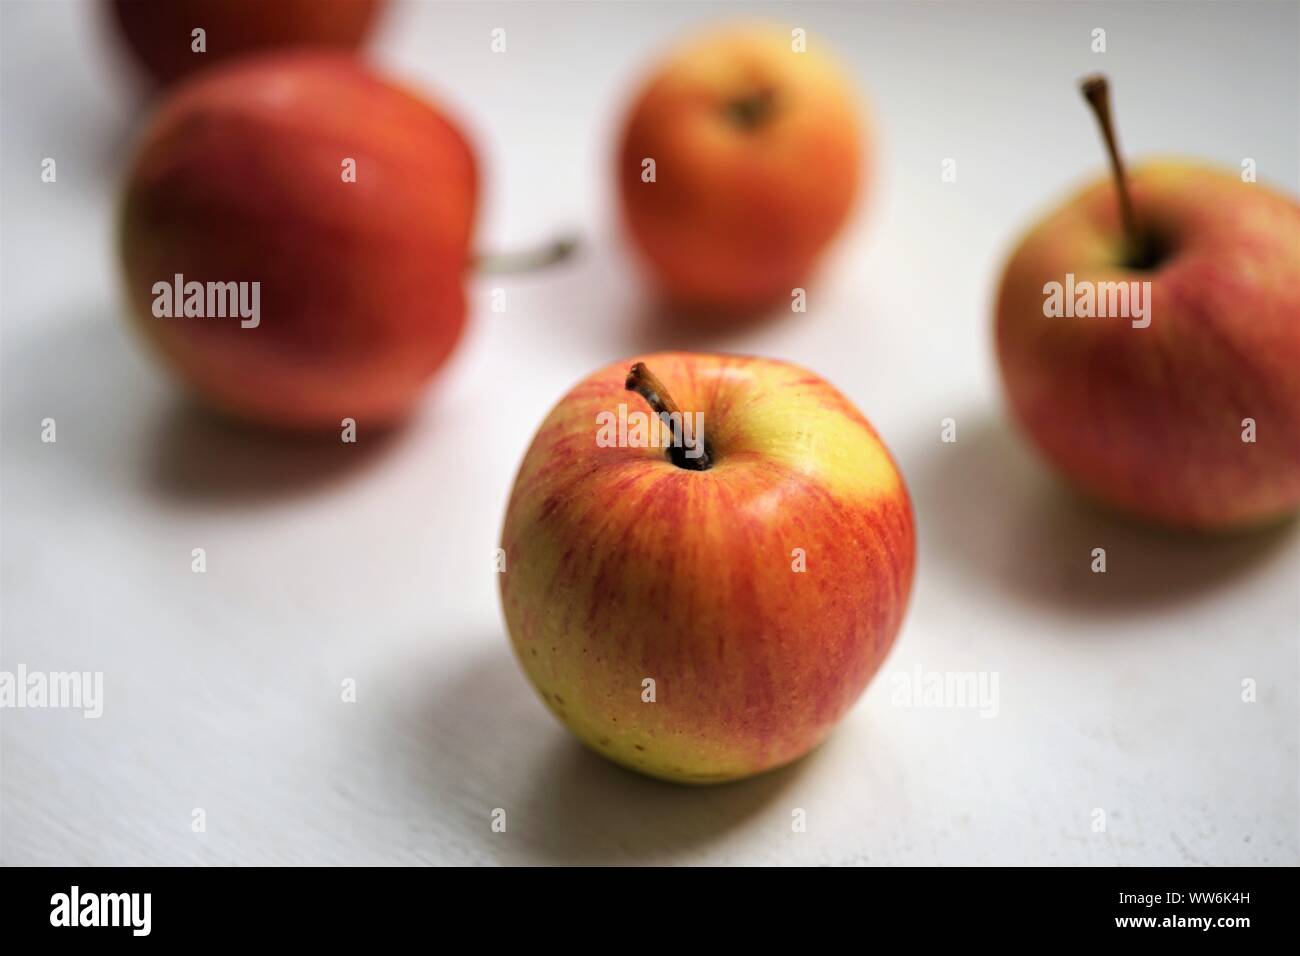 Fünf Äpfel, rot mit gelben Flecken, liegen auf einem weißen Tisch Stockfoto